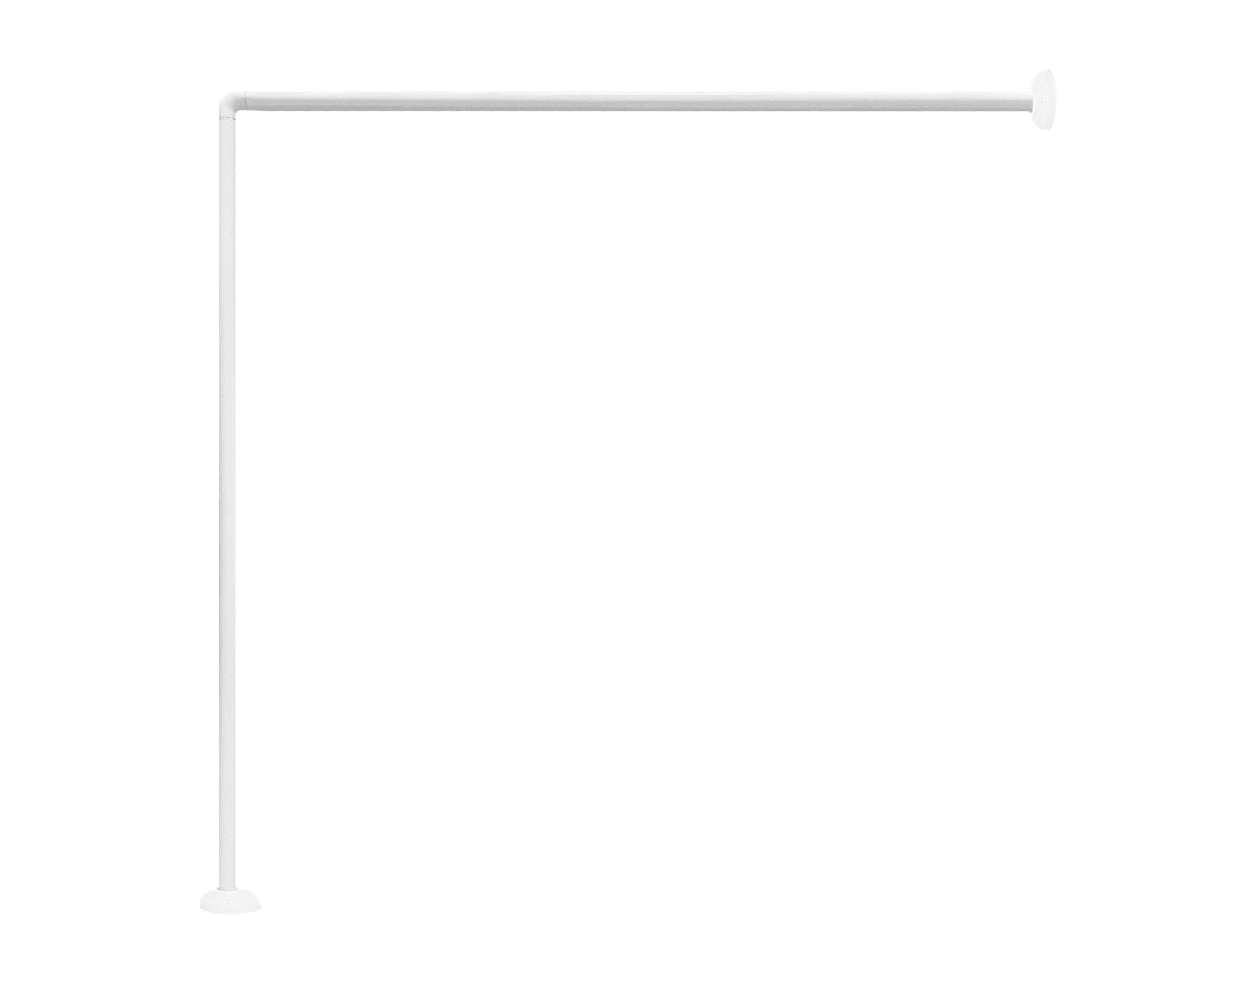 Acomoda textil – barra cortina ducha universal de aluminio en forma de l.